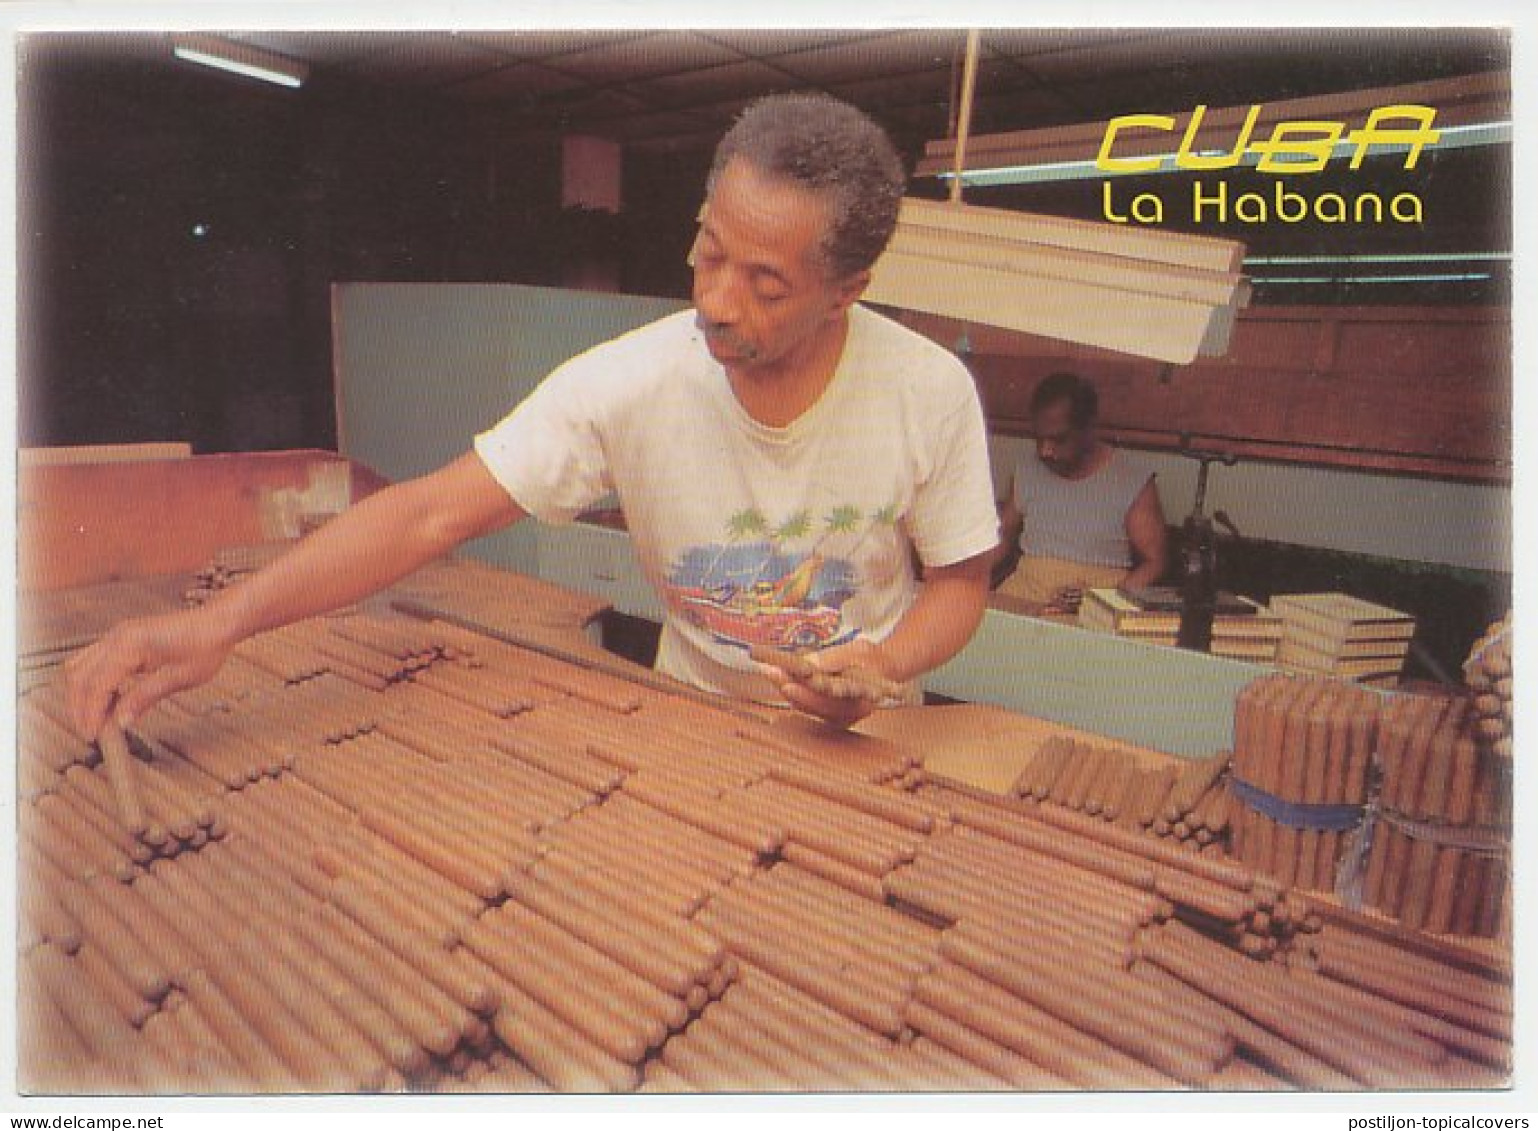 Postal Stationery Cuba 2000 Cigar - Tabac